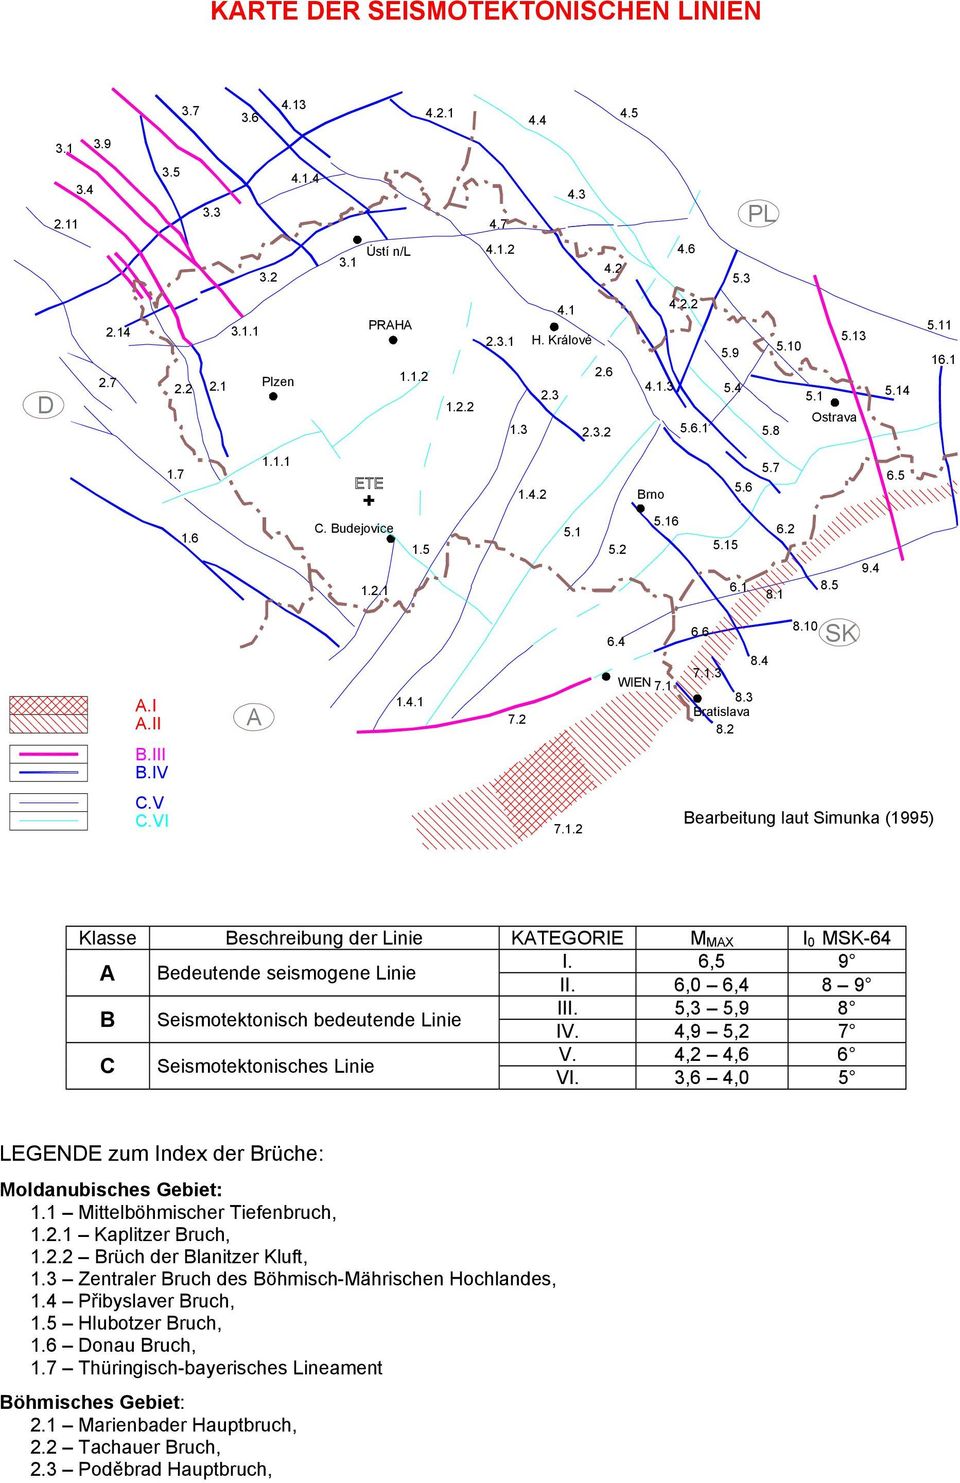 II B.III B.IV A 1.4.1 7.2 6.4 WIEN 7.1 6.6 8.4 7.1.3 8.3 Bratislava 8.2 8.10 SK C.V C.VI 7.1.2 Bearbeitung laut Simunka (1995) Klasse Beschreibung der Linie KATEGORIE M MAX I 0 MSK-64 A Bedeutende seismogene Linie I.